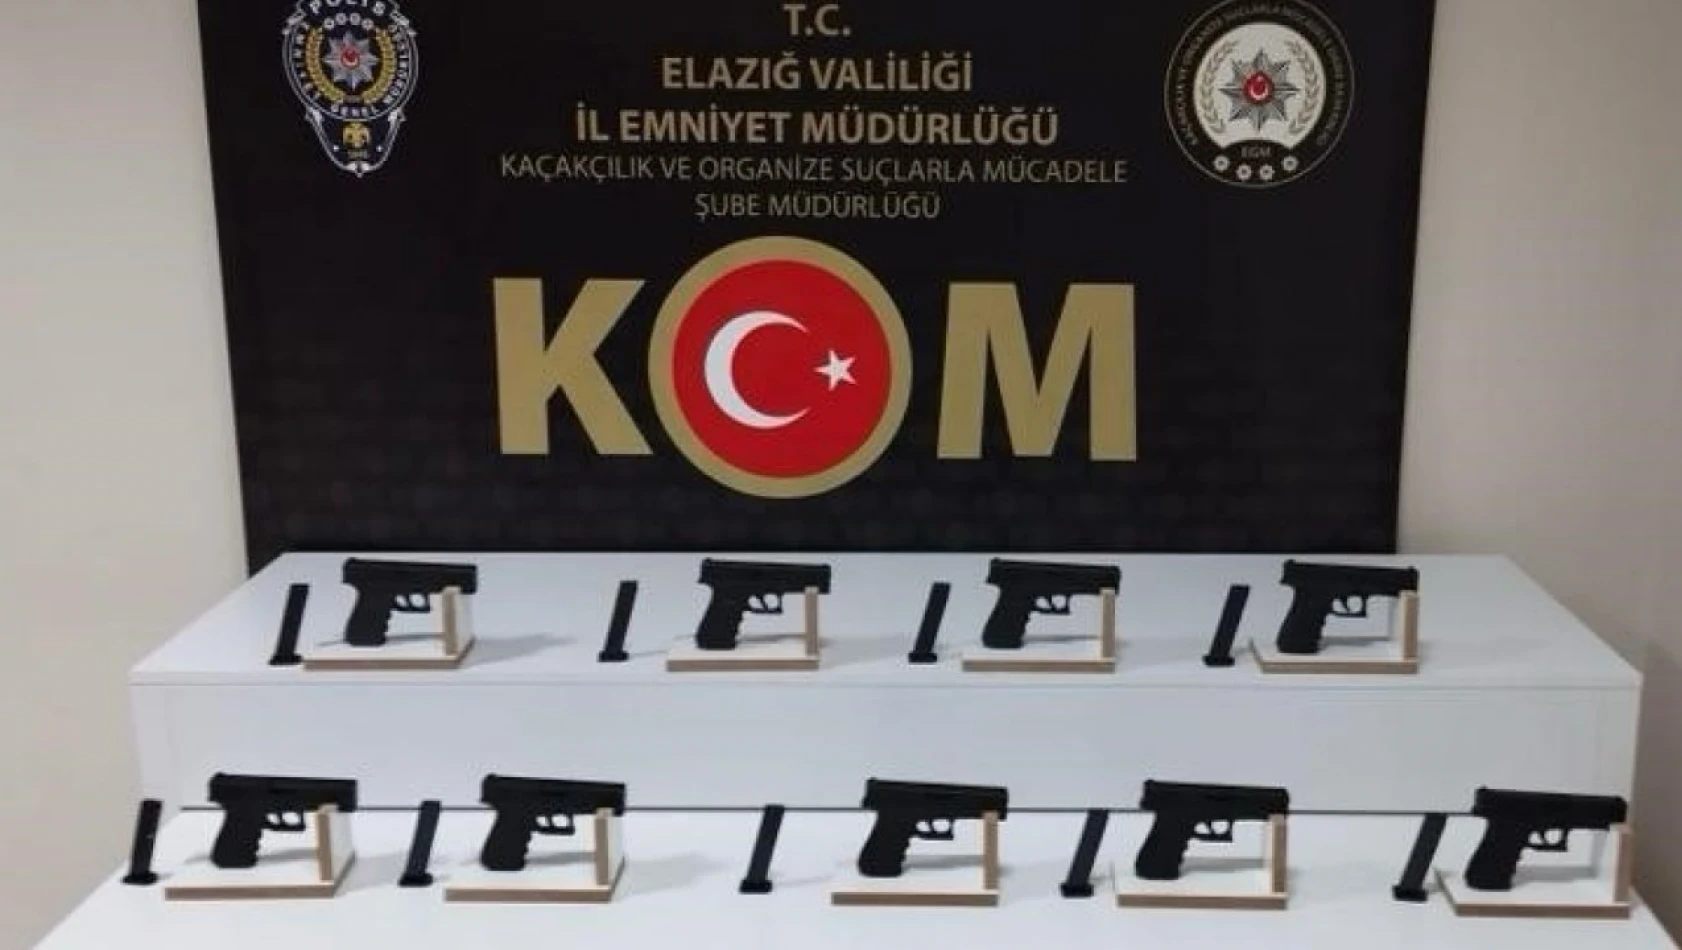 Elazığ'da 9 adet ruhsatsız tabanca ele geçirildi: 1 tutuklama